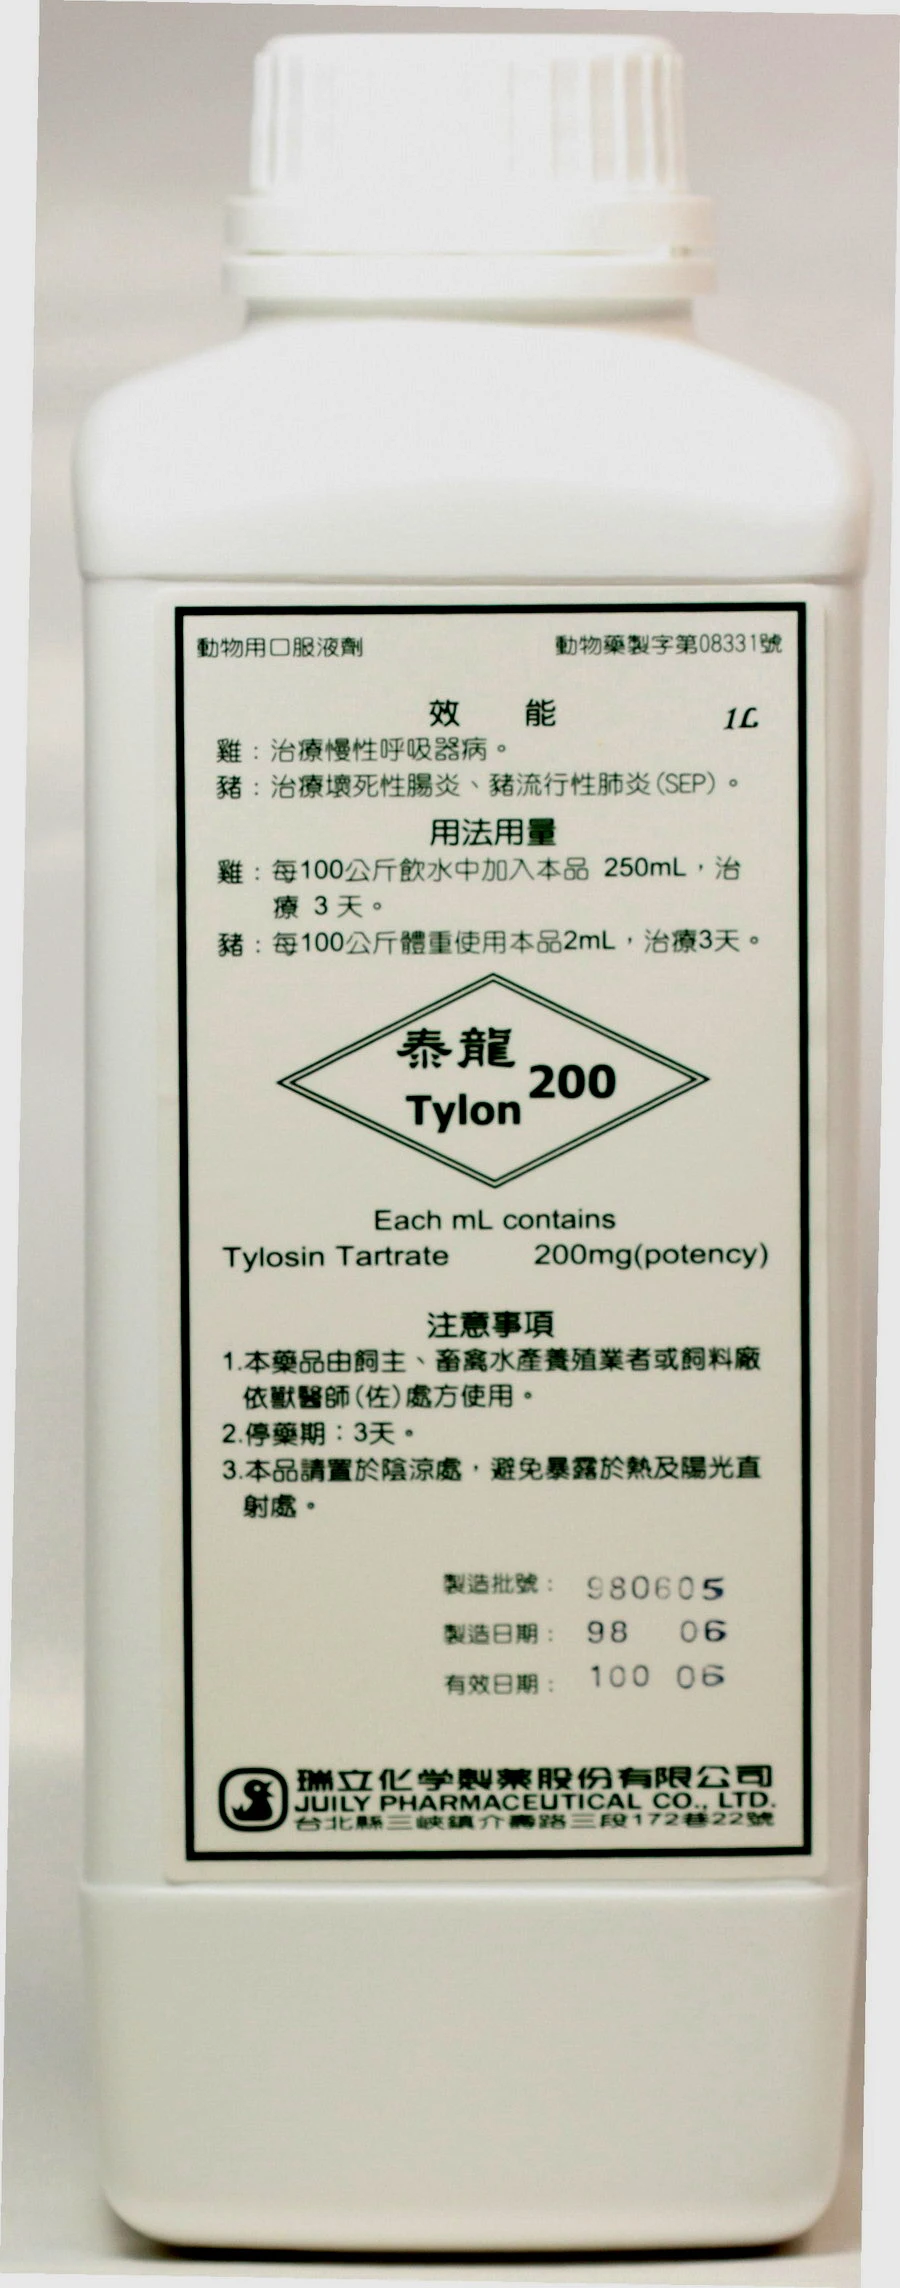 泰龍 200 口服液劑